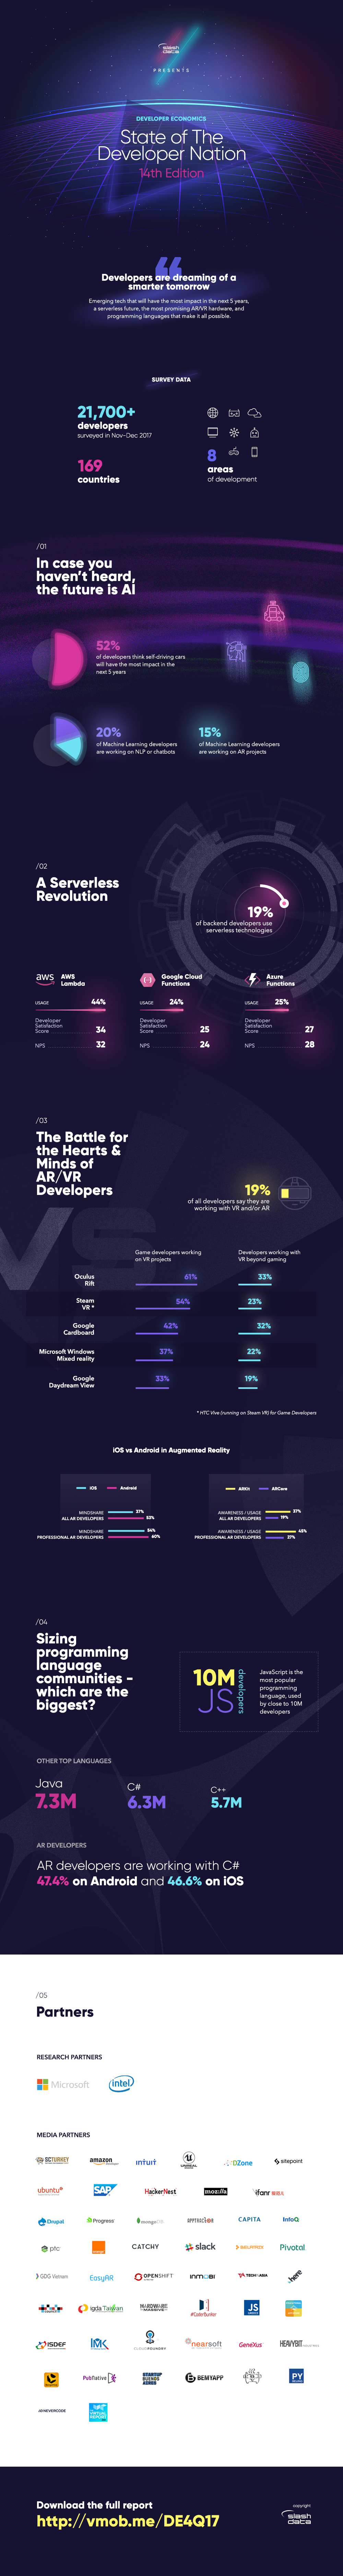 El 19% de los desarrolladores está trabajando en proyectos de realidad virtual o aumentada